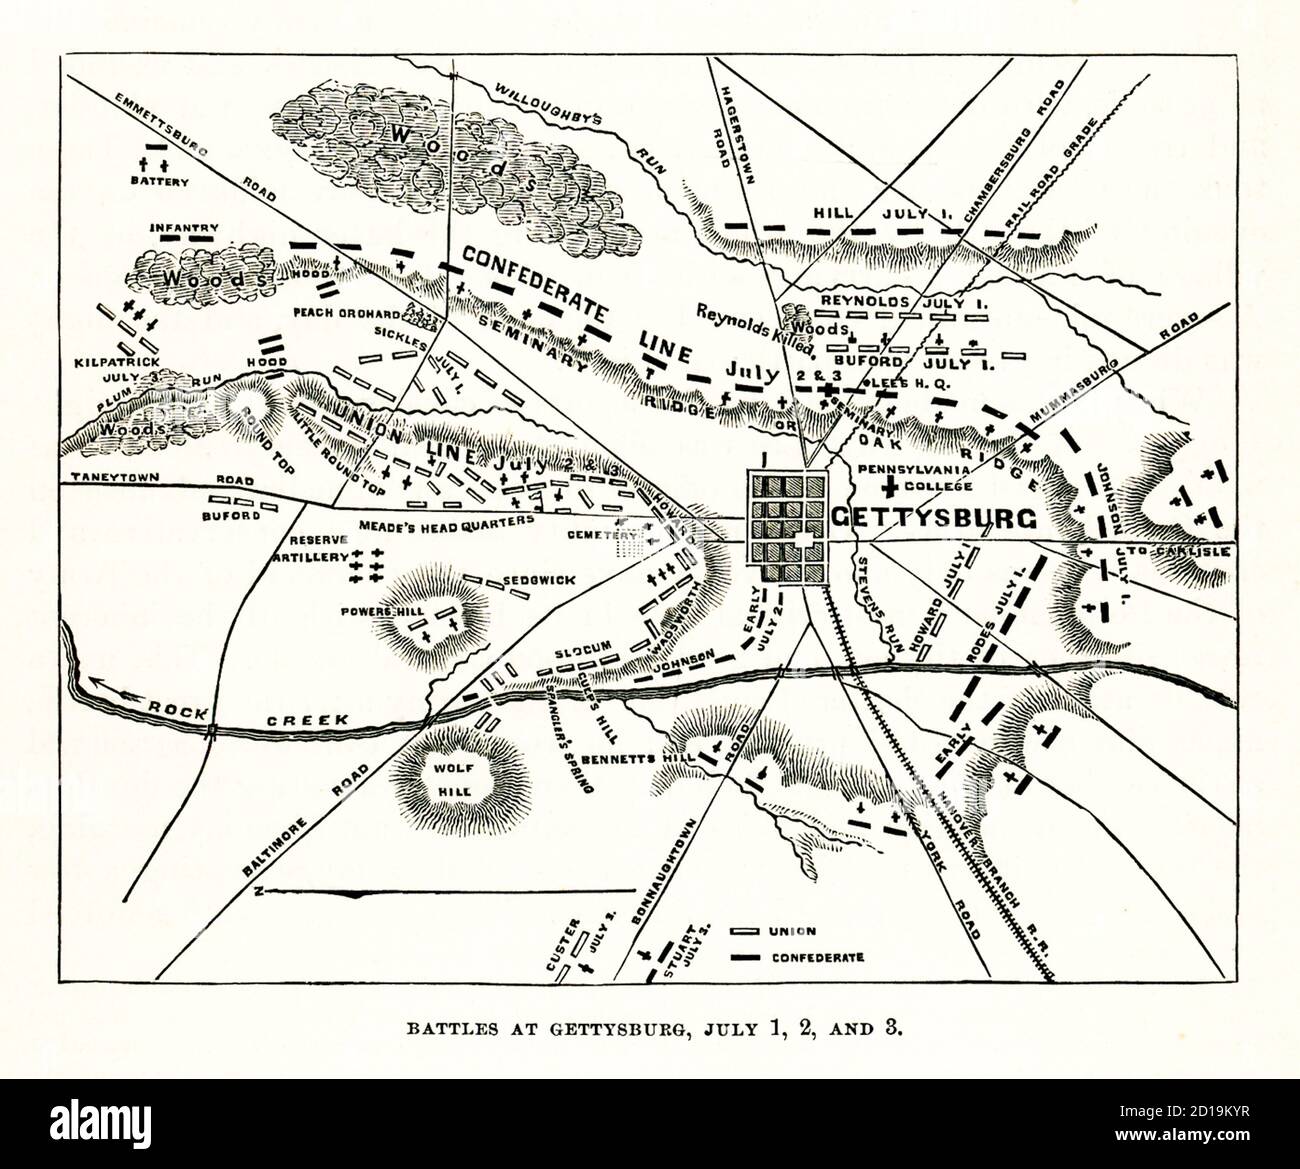 Batailles de Gettysburg les 1er, 2 et 3 juillet. Cette illustration de 1866 montre les lignes de bataille. La bataille de Gettysburg a été menée du 1er au 3 juillet 1863 dans la ville de Gettysburg, en Pennsylvanie, par les forces de l'Union et de la Confédération pendant la guerre civile américaine. La bataille a impliqué le plus grand nombre de victimes de toute la guerre et est souvent décrit comme le point tournant de la guerre. Union Maj. L'armée du Potomac du général George Meade a battu les attaques de l'armée de Virginie du Nord du confédéré Robert E. Lee, arrêtant l'invasion du Nord par Lee. Banque D'Images